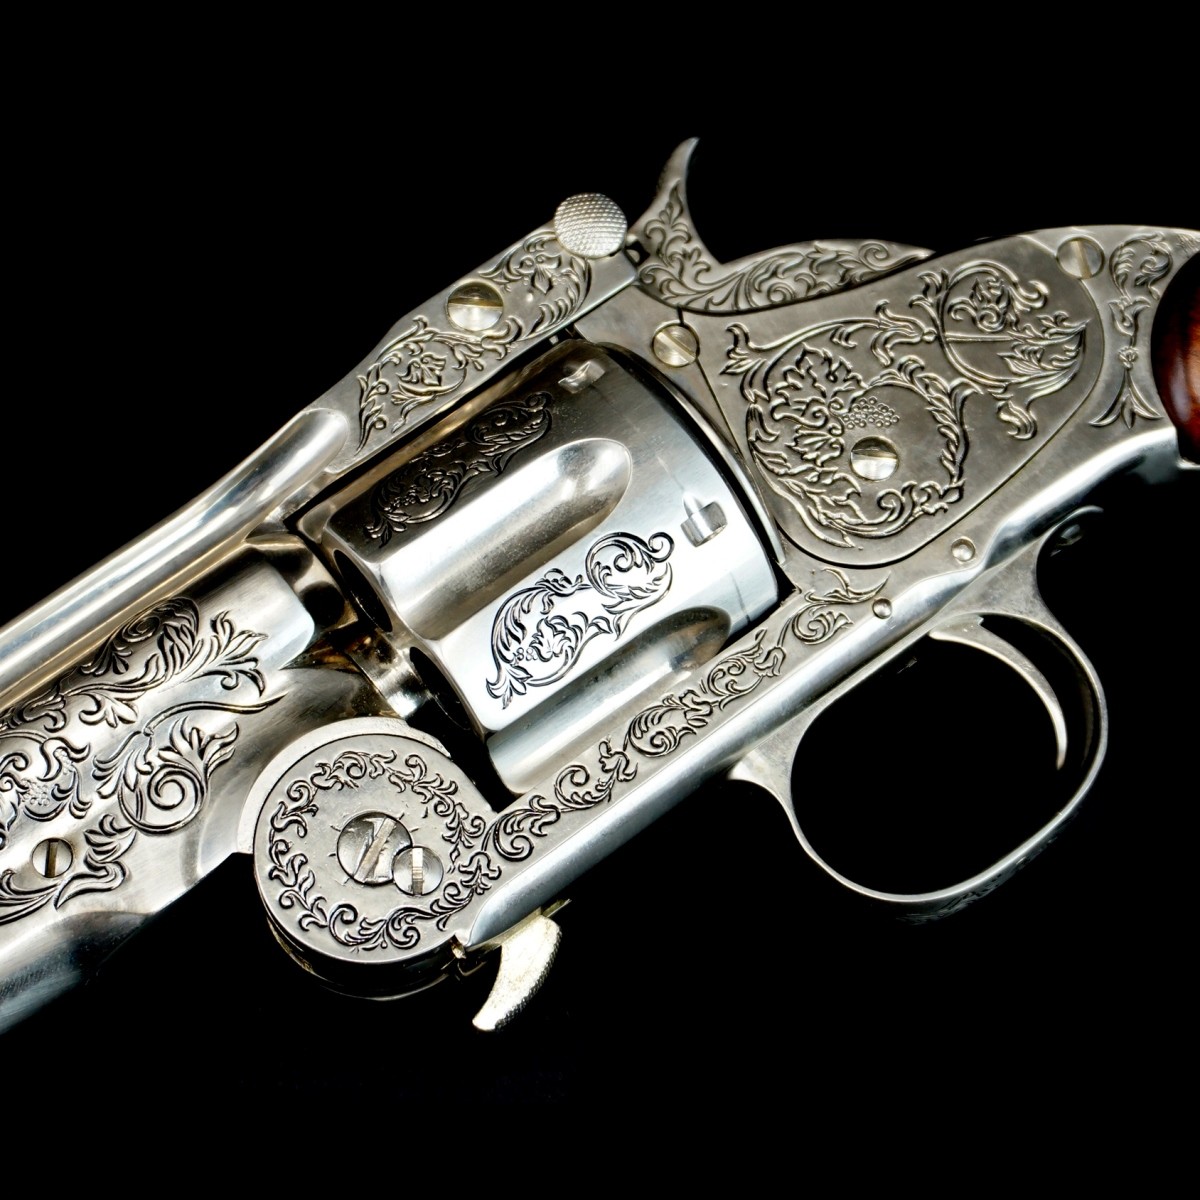 Replica Wyatt Earp .44 Revolver